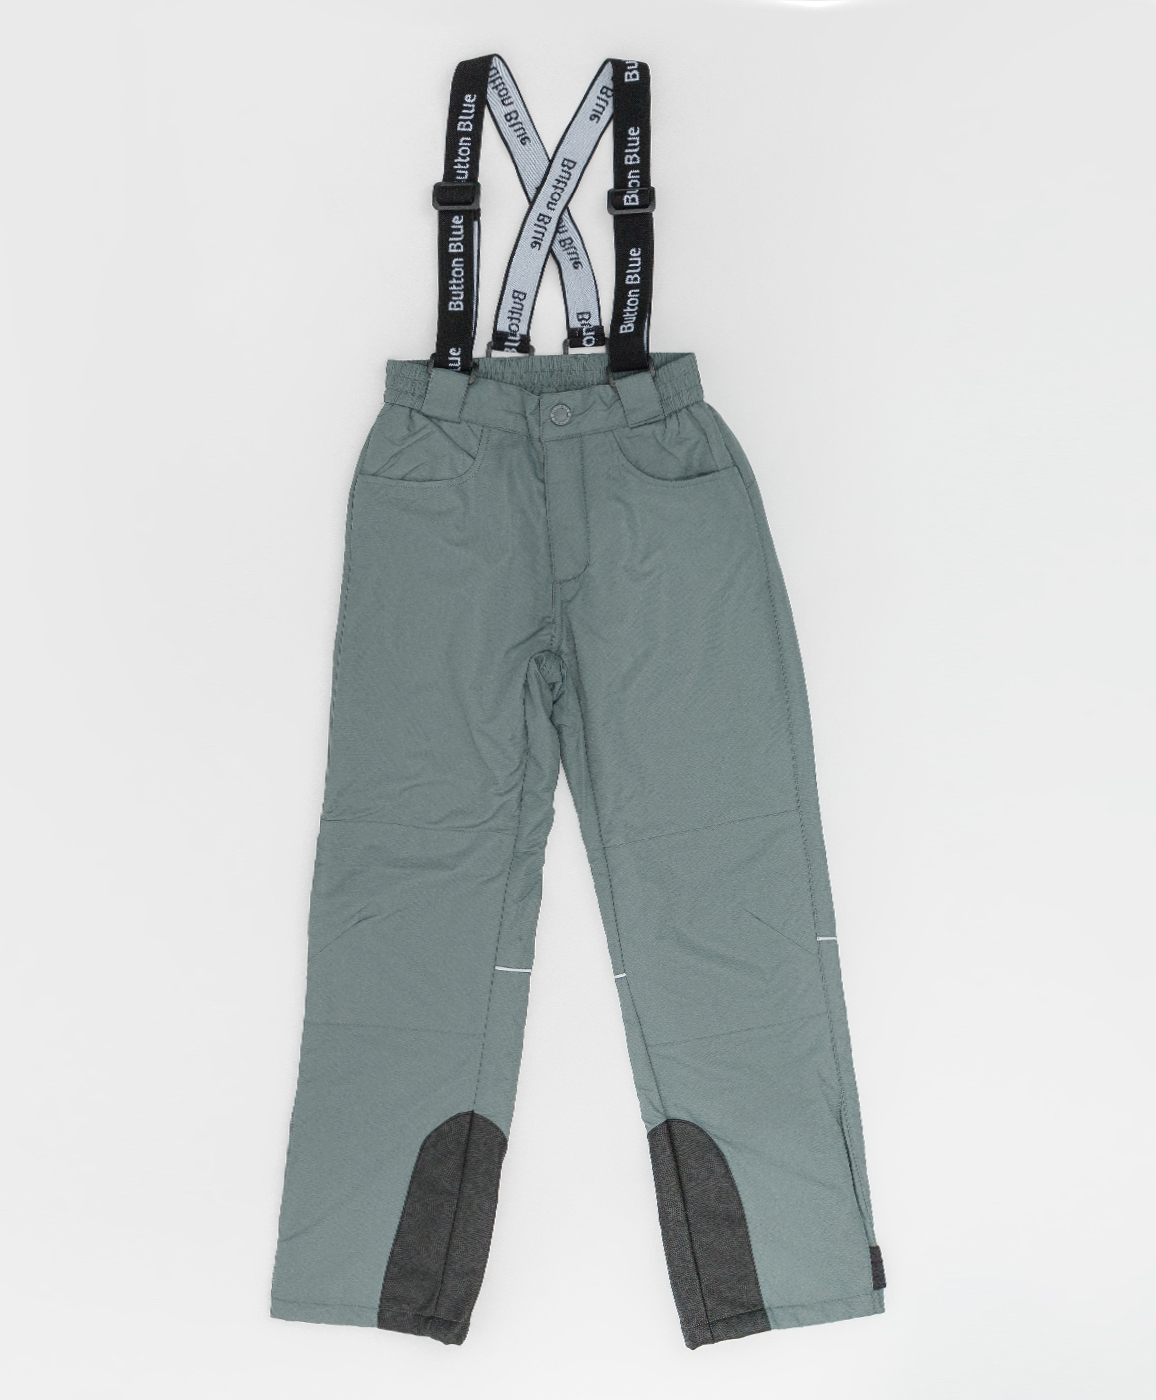 Демисезонные брюки Active Button Blue 220BBGA64012000, размер 146, цвет серый regular fit / прямые - фото 3